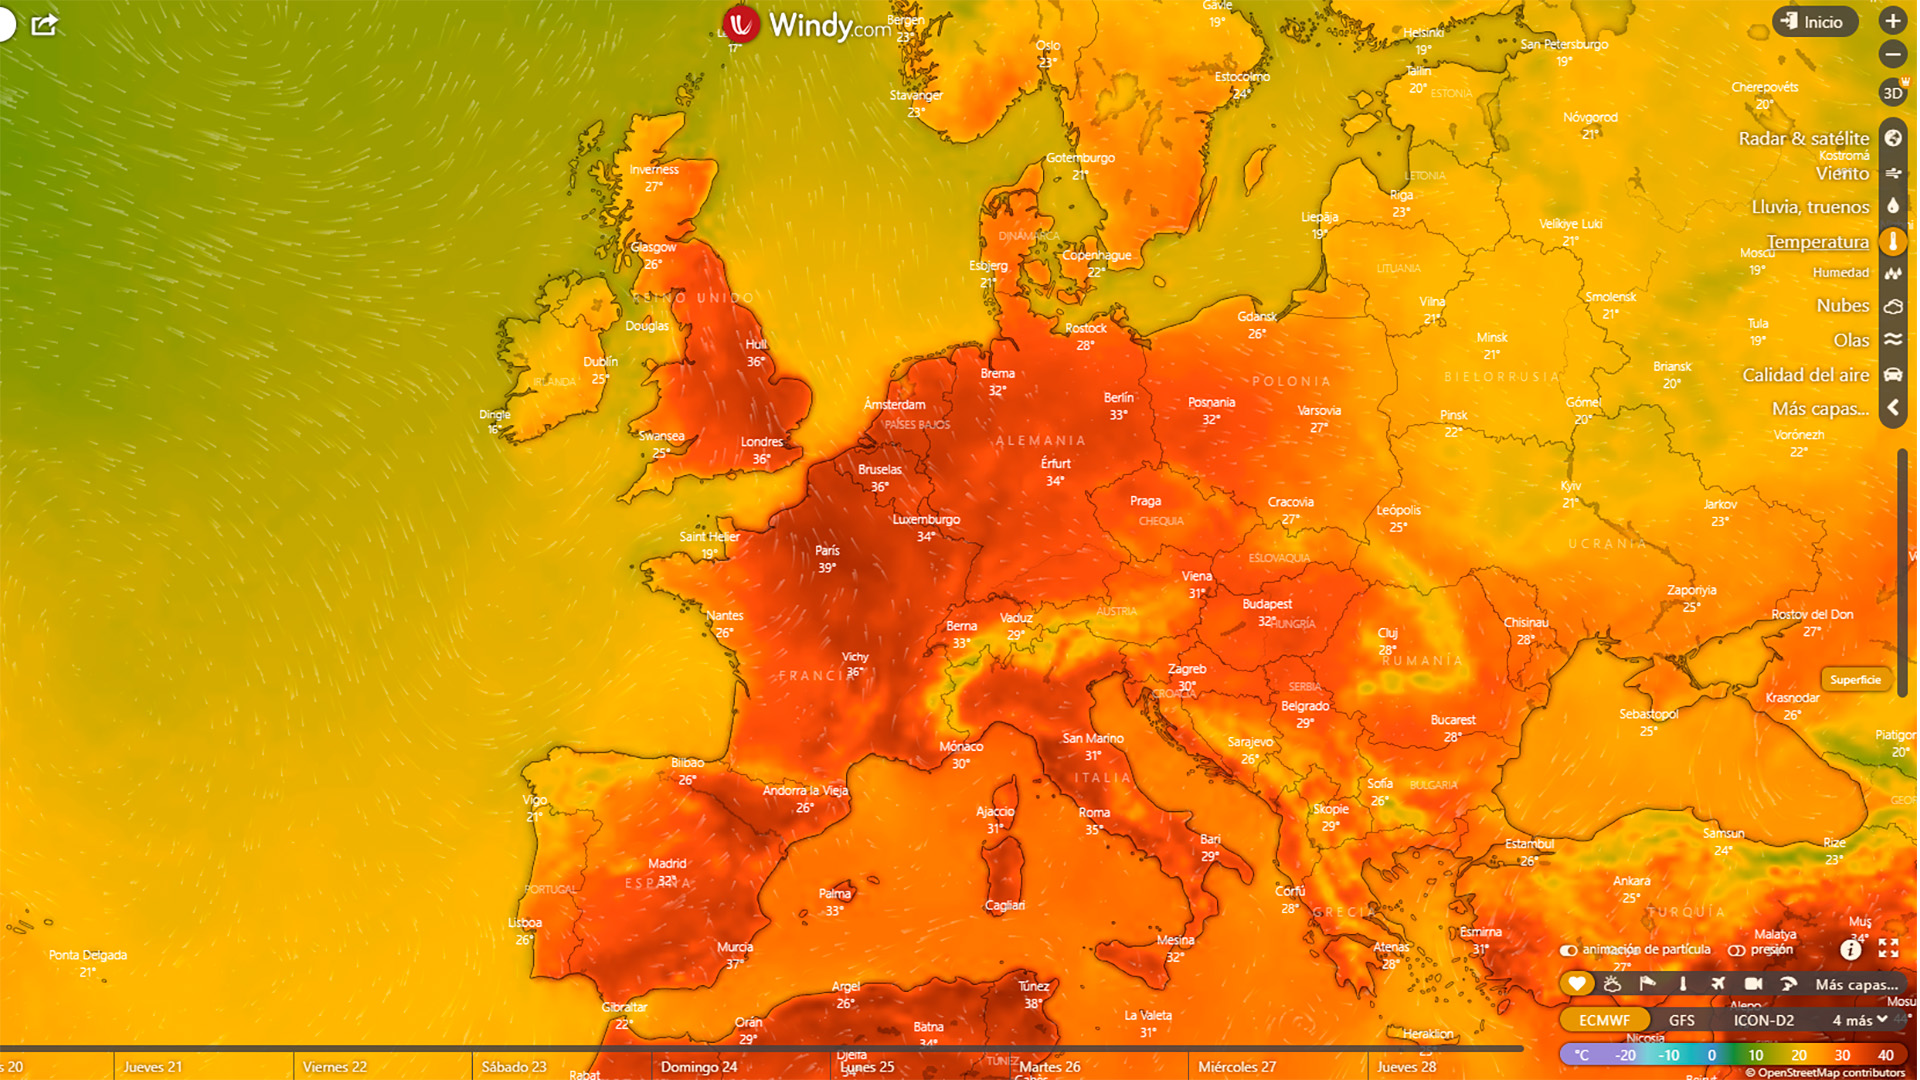 Aunque el Reino Unido se muestra como un epicentro apto para el estudio, toda Europa ya ha experimentado varias olas de calor este año